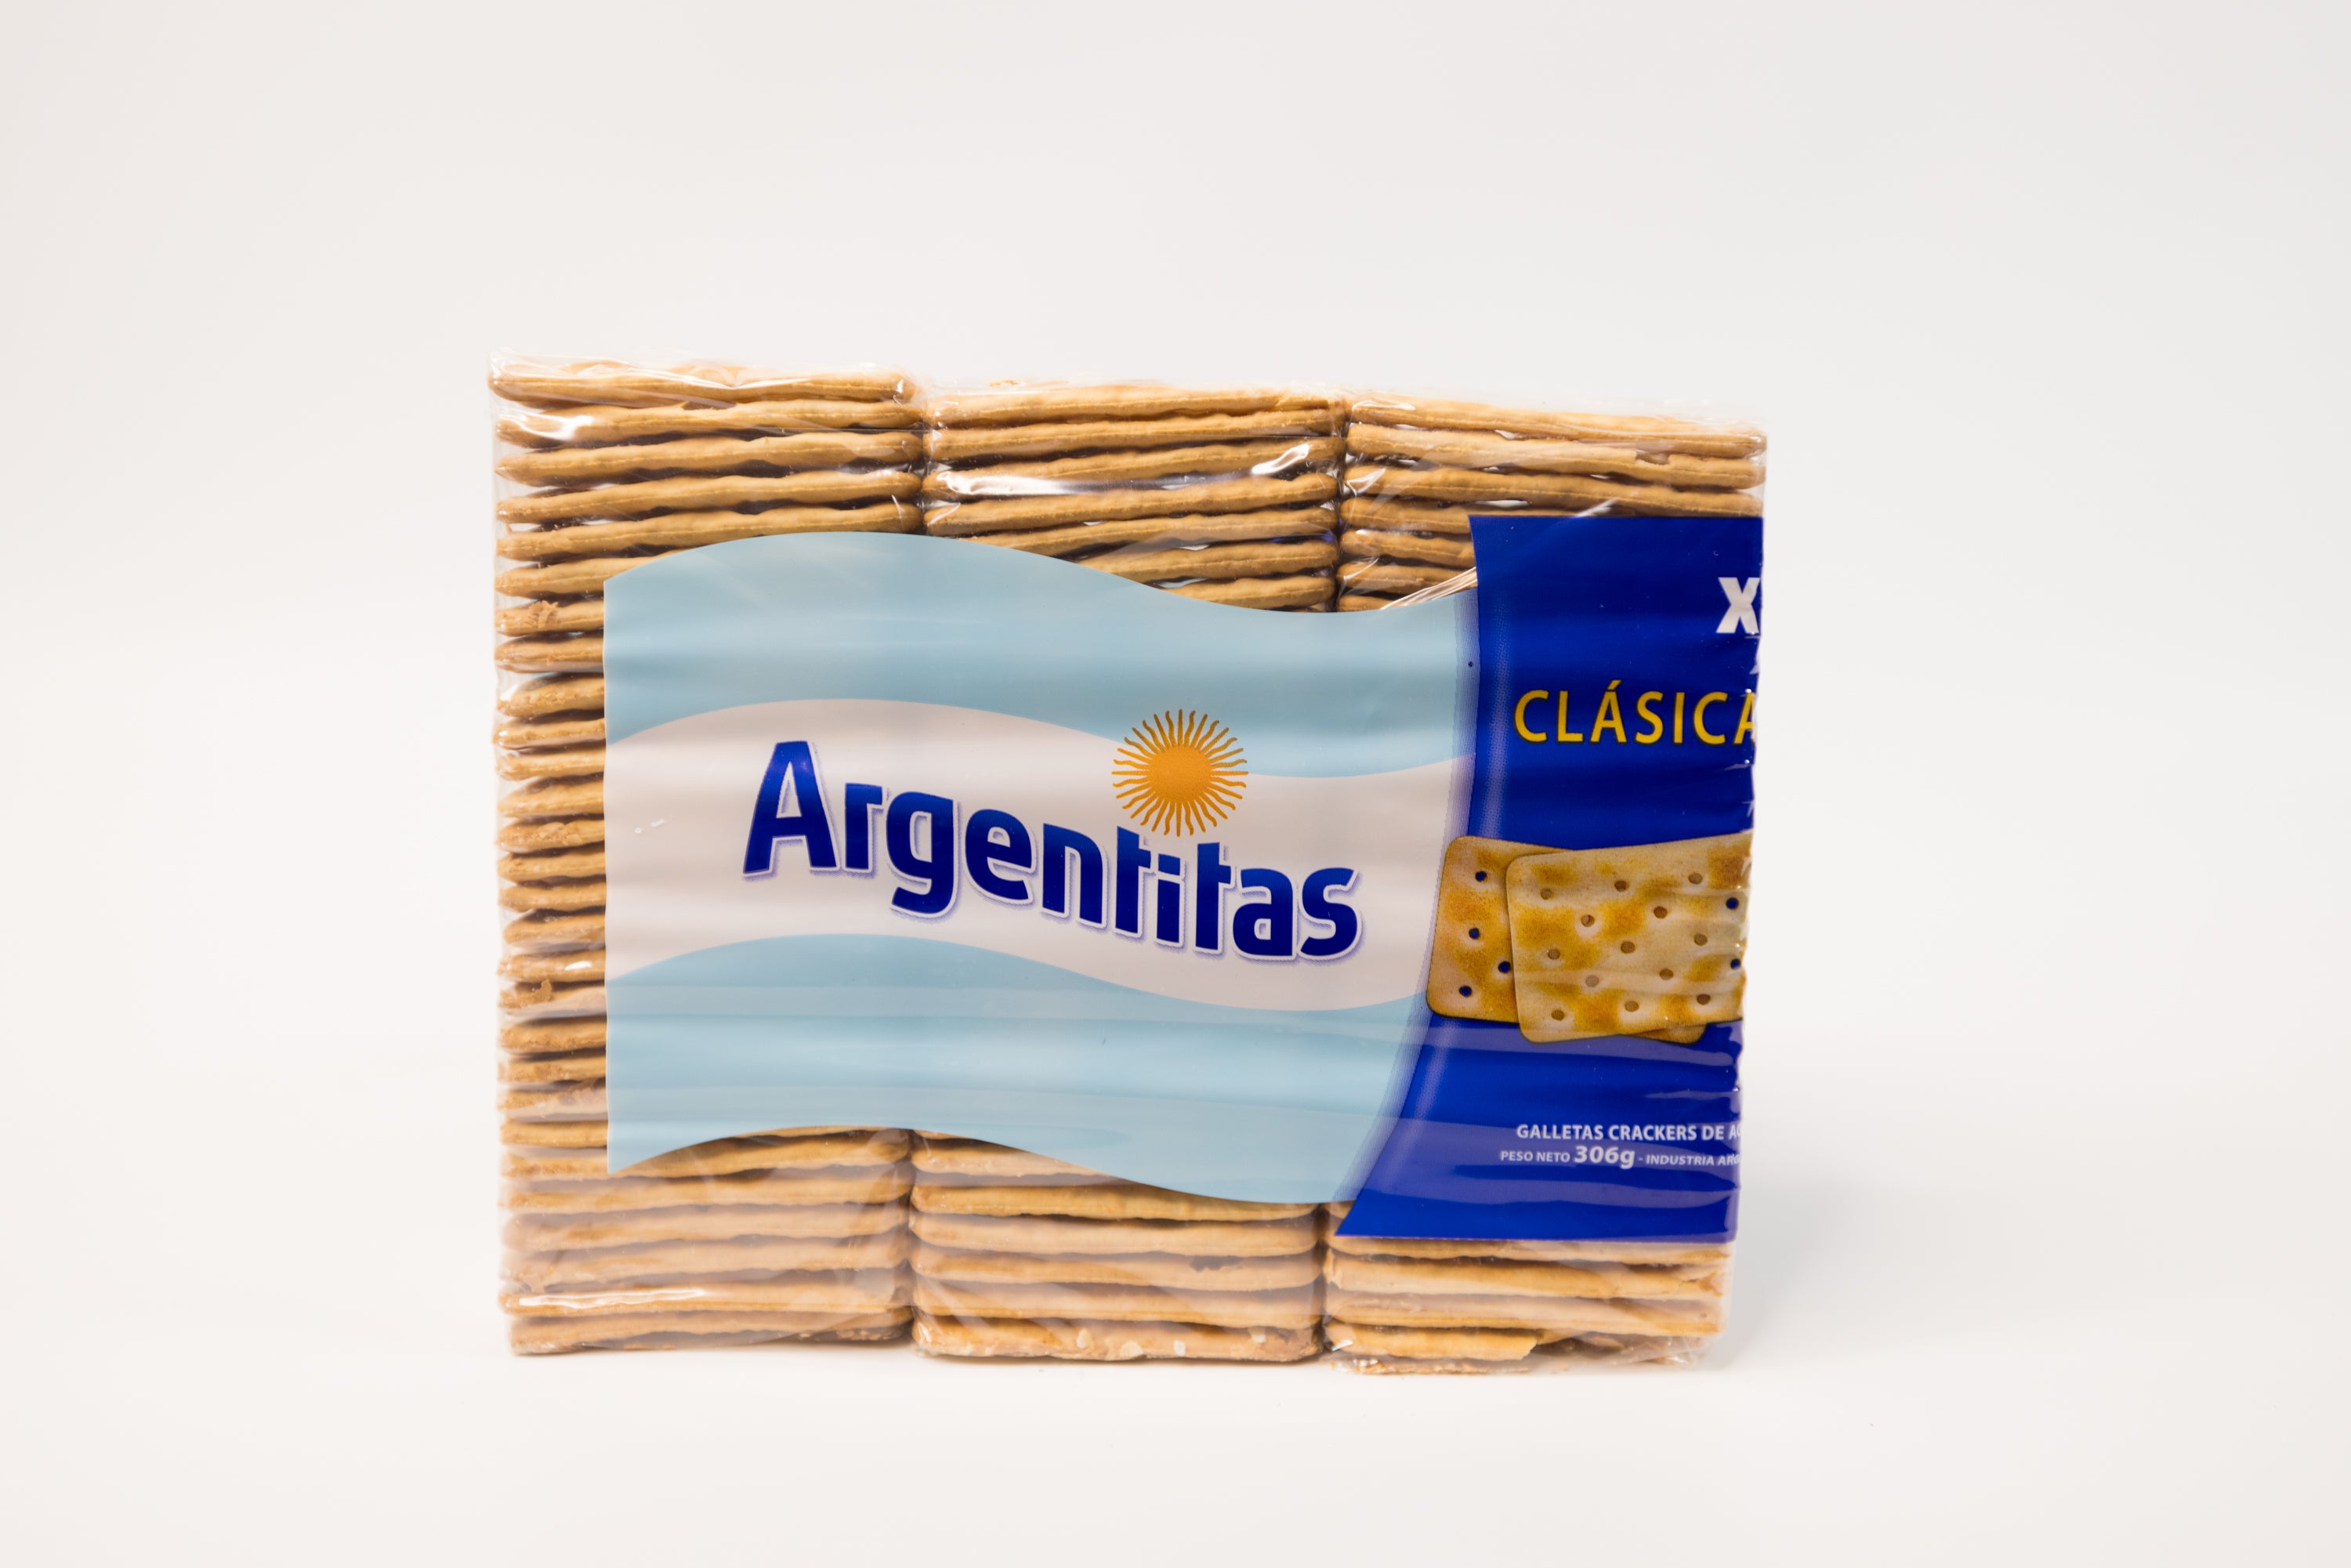 Argentitas Galletas Clasicas 3 Pack